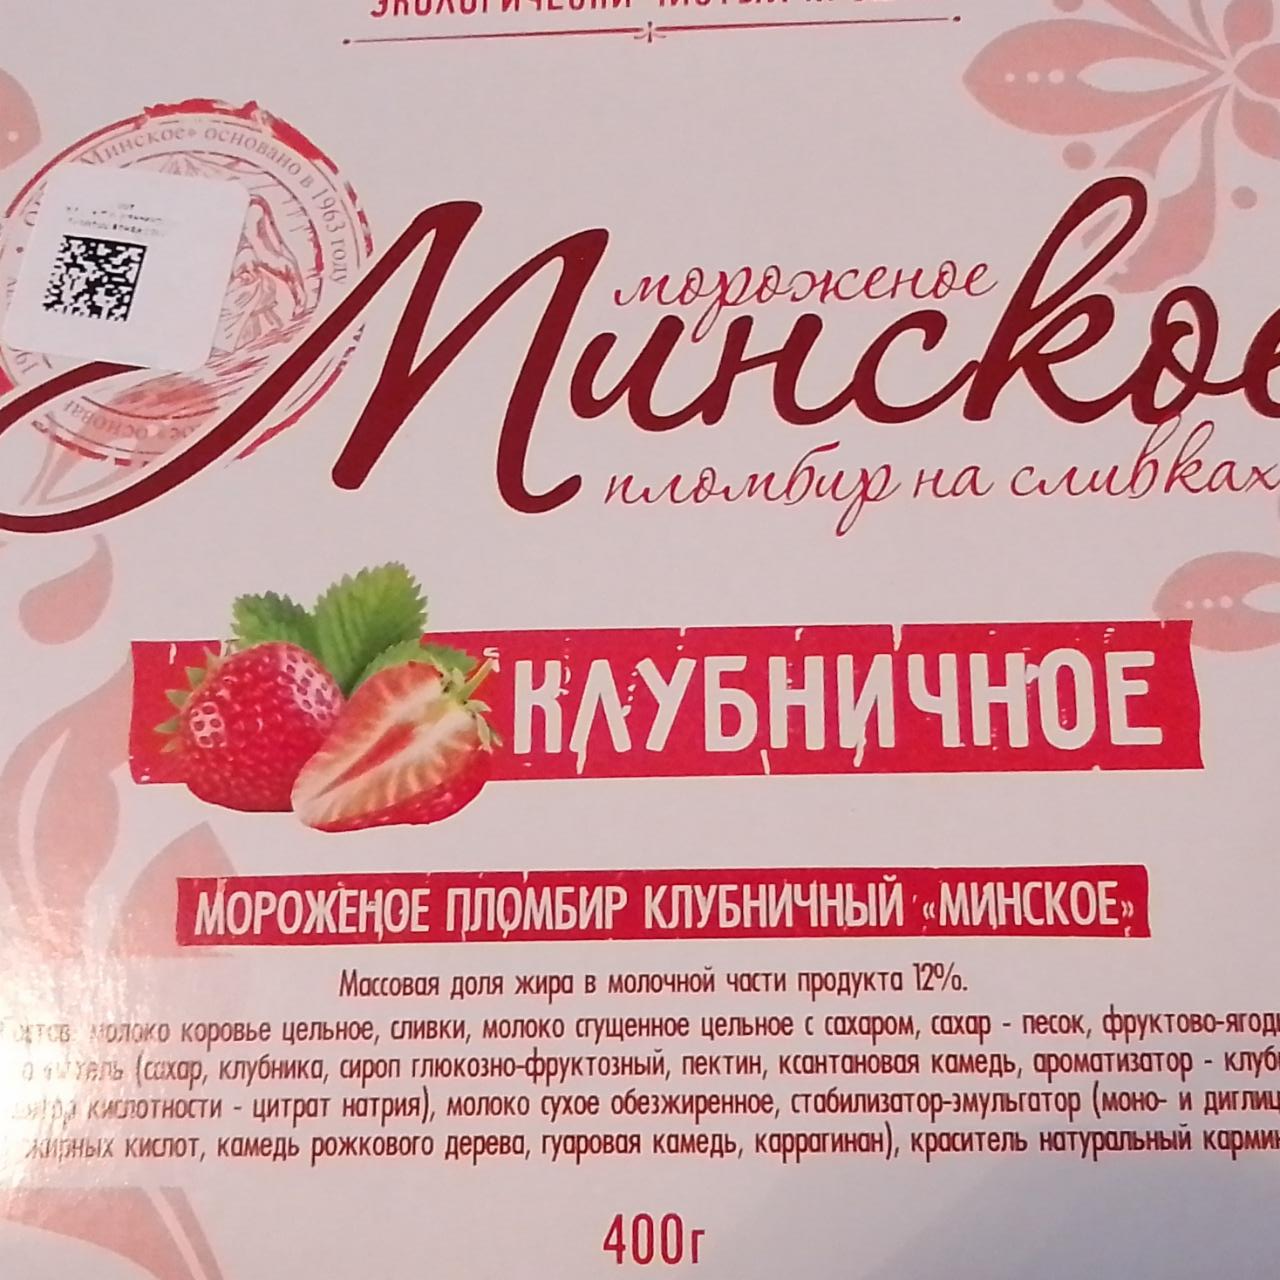 Фото - мороженое пломбир клубничное Минское